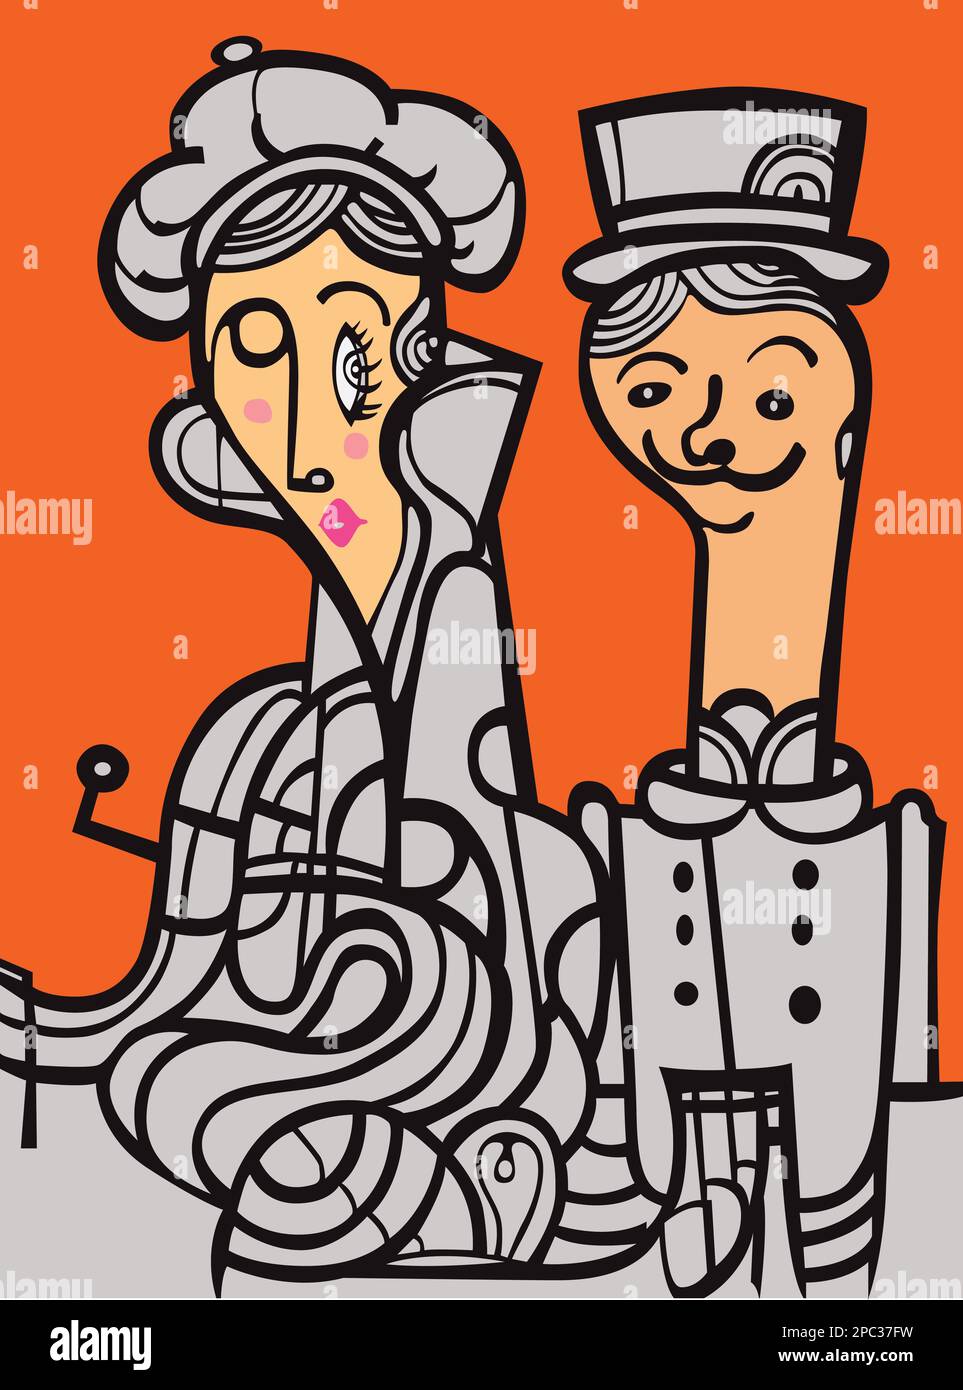 Illustration de l'anglais britannique européen mi-âge stylisé couple heureux homme et femme en costumes rétro vintage avec des chapeaux sur l'art mural de couleur orange Banque D'Images